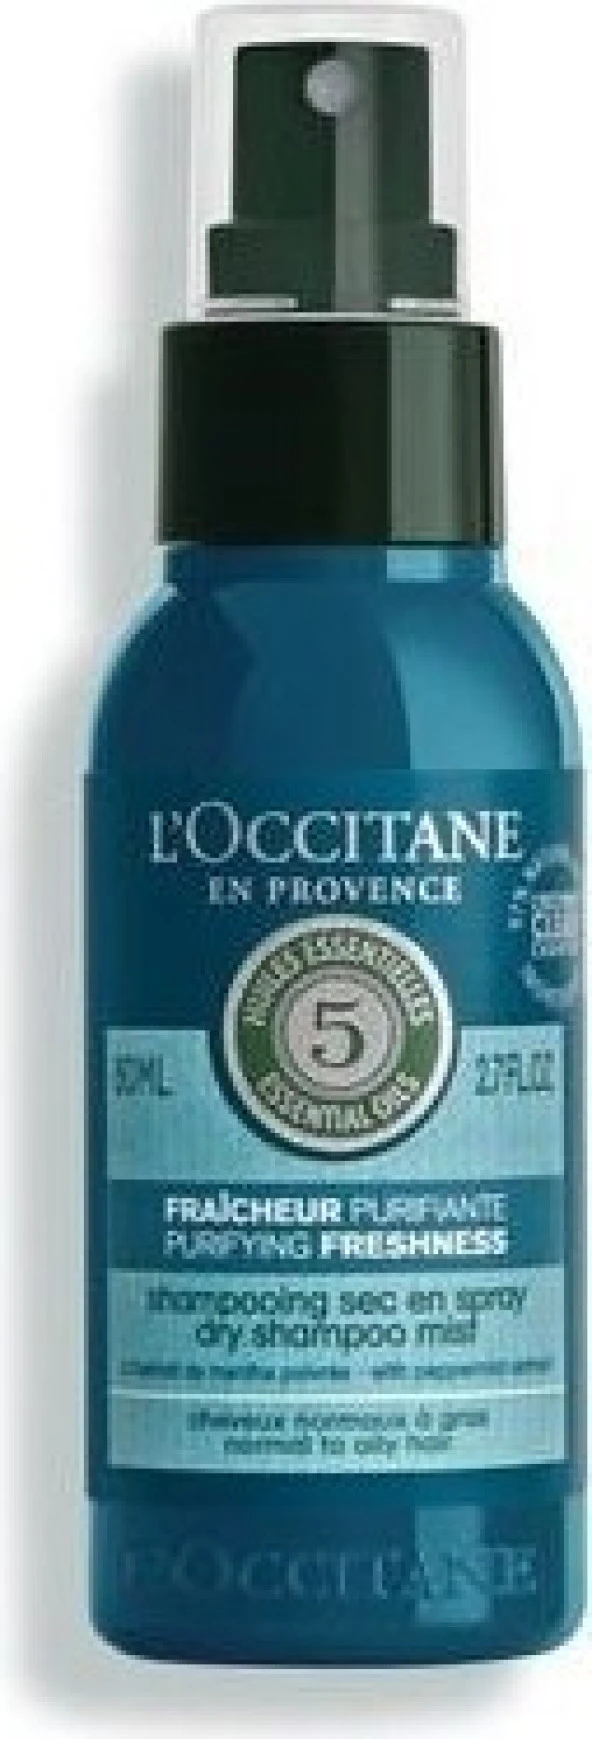 LOccitane Aromakoloji Canlandırıcı Ferahlatıcı Kuru Şampuan Spreyi 80 ml